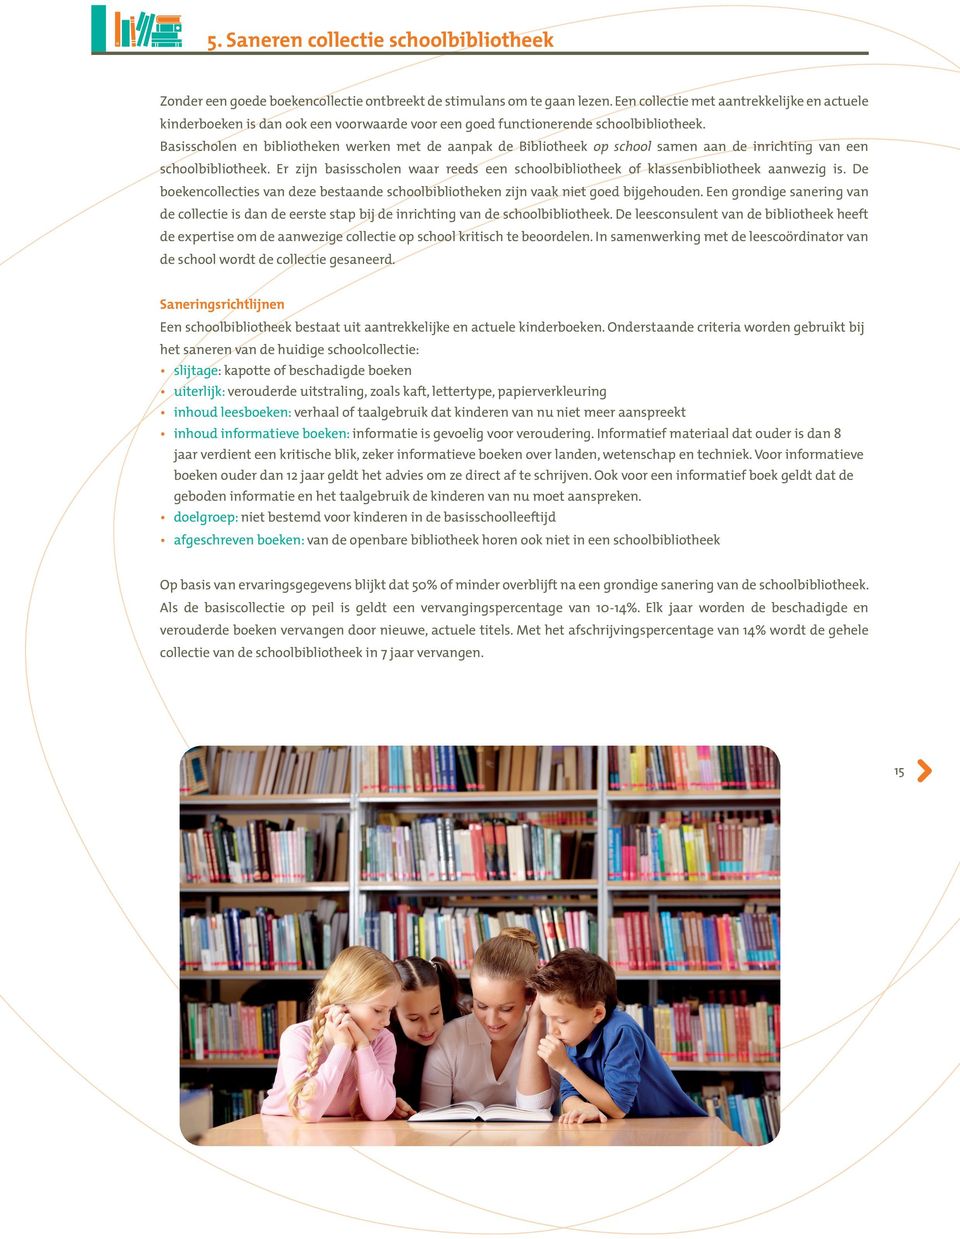 Basisscholen en bibliotheken werken met de aanpak de Bibliotheek op school samen aan de inrichting van een schoolbibliotheek.